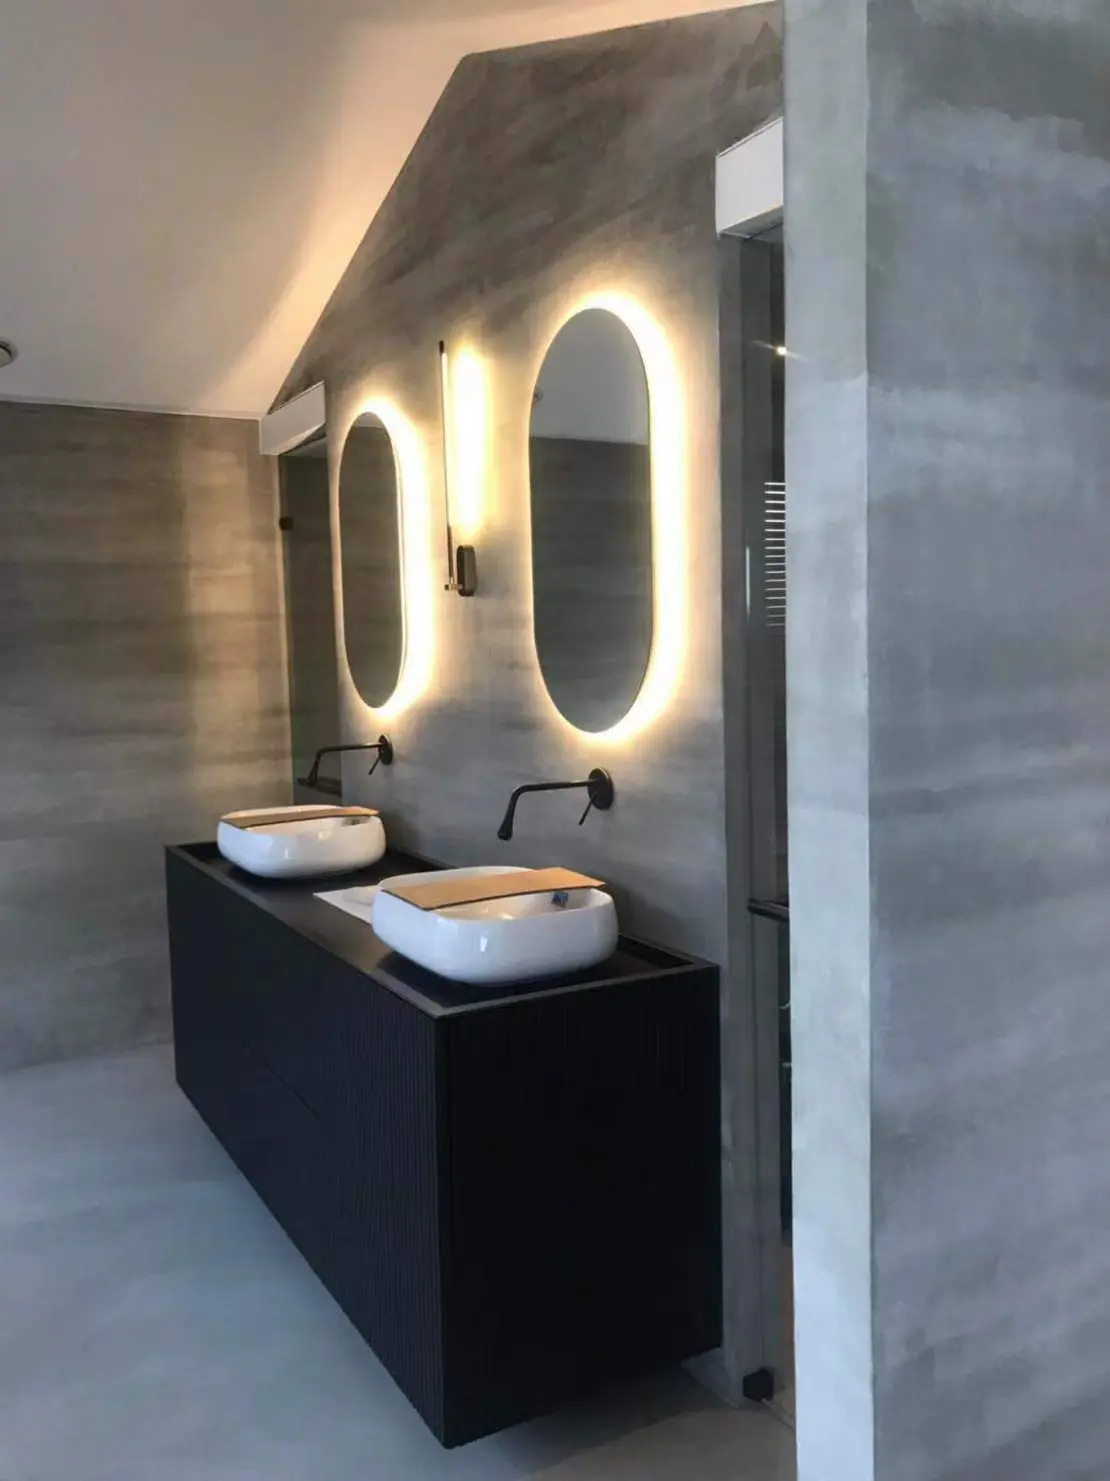 Béton ciré sur le sol et les murs d'une salle de bain minimaliste décorée avec des robinets noirs